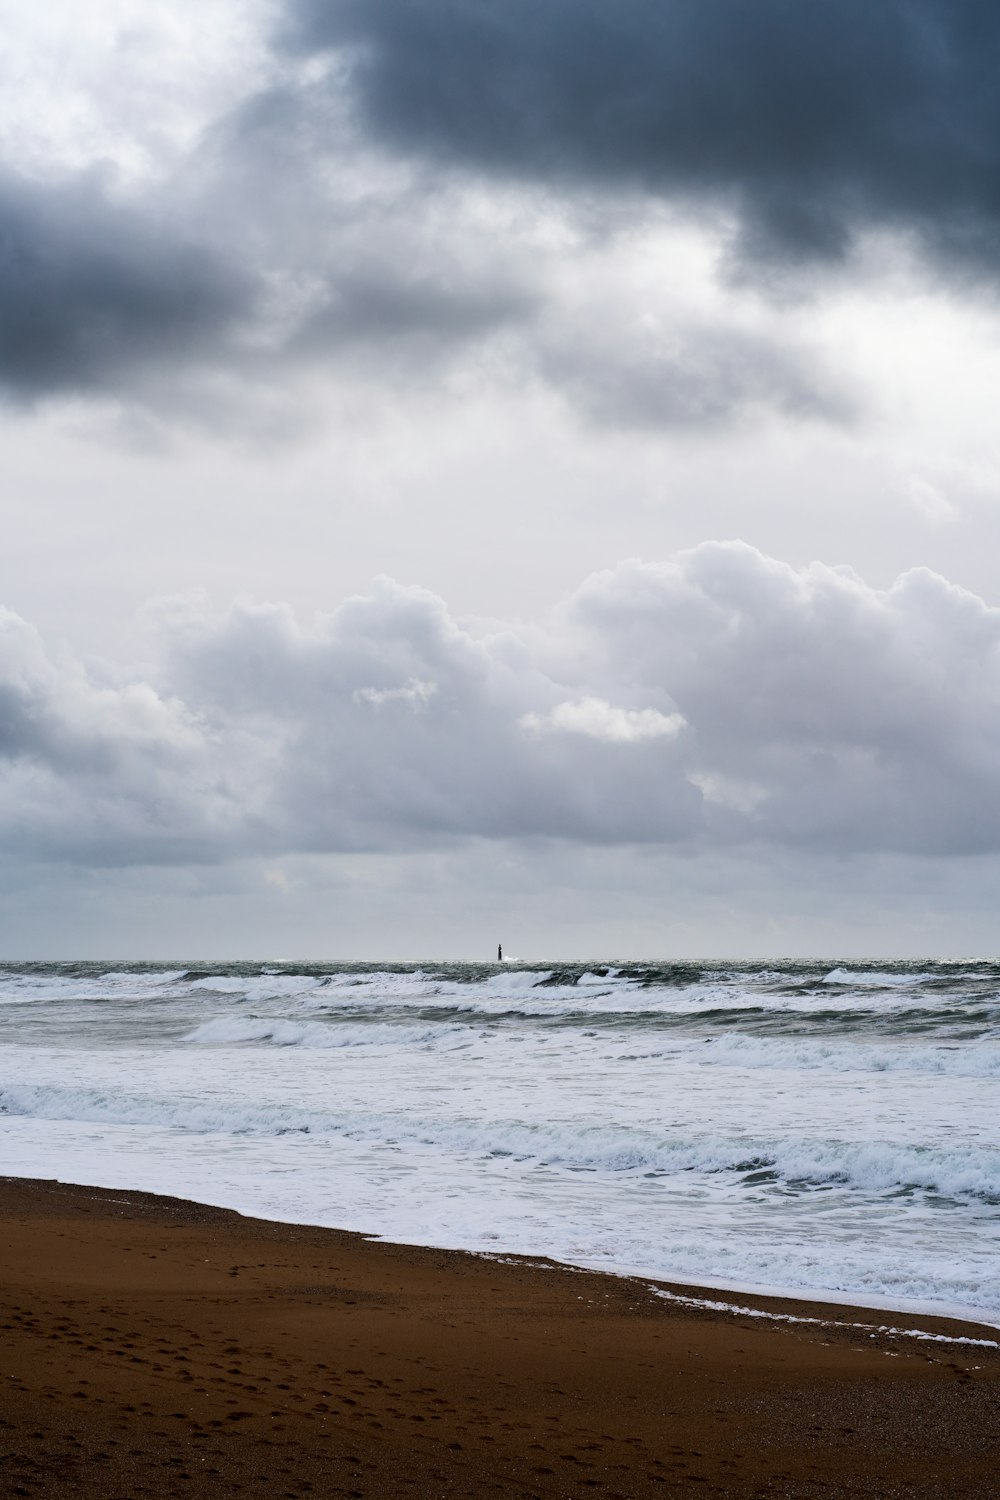 Una persona caminando en una playa cerca del océano